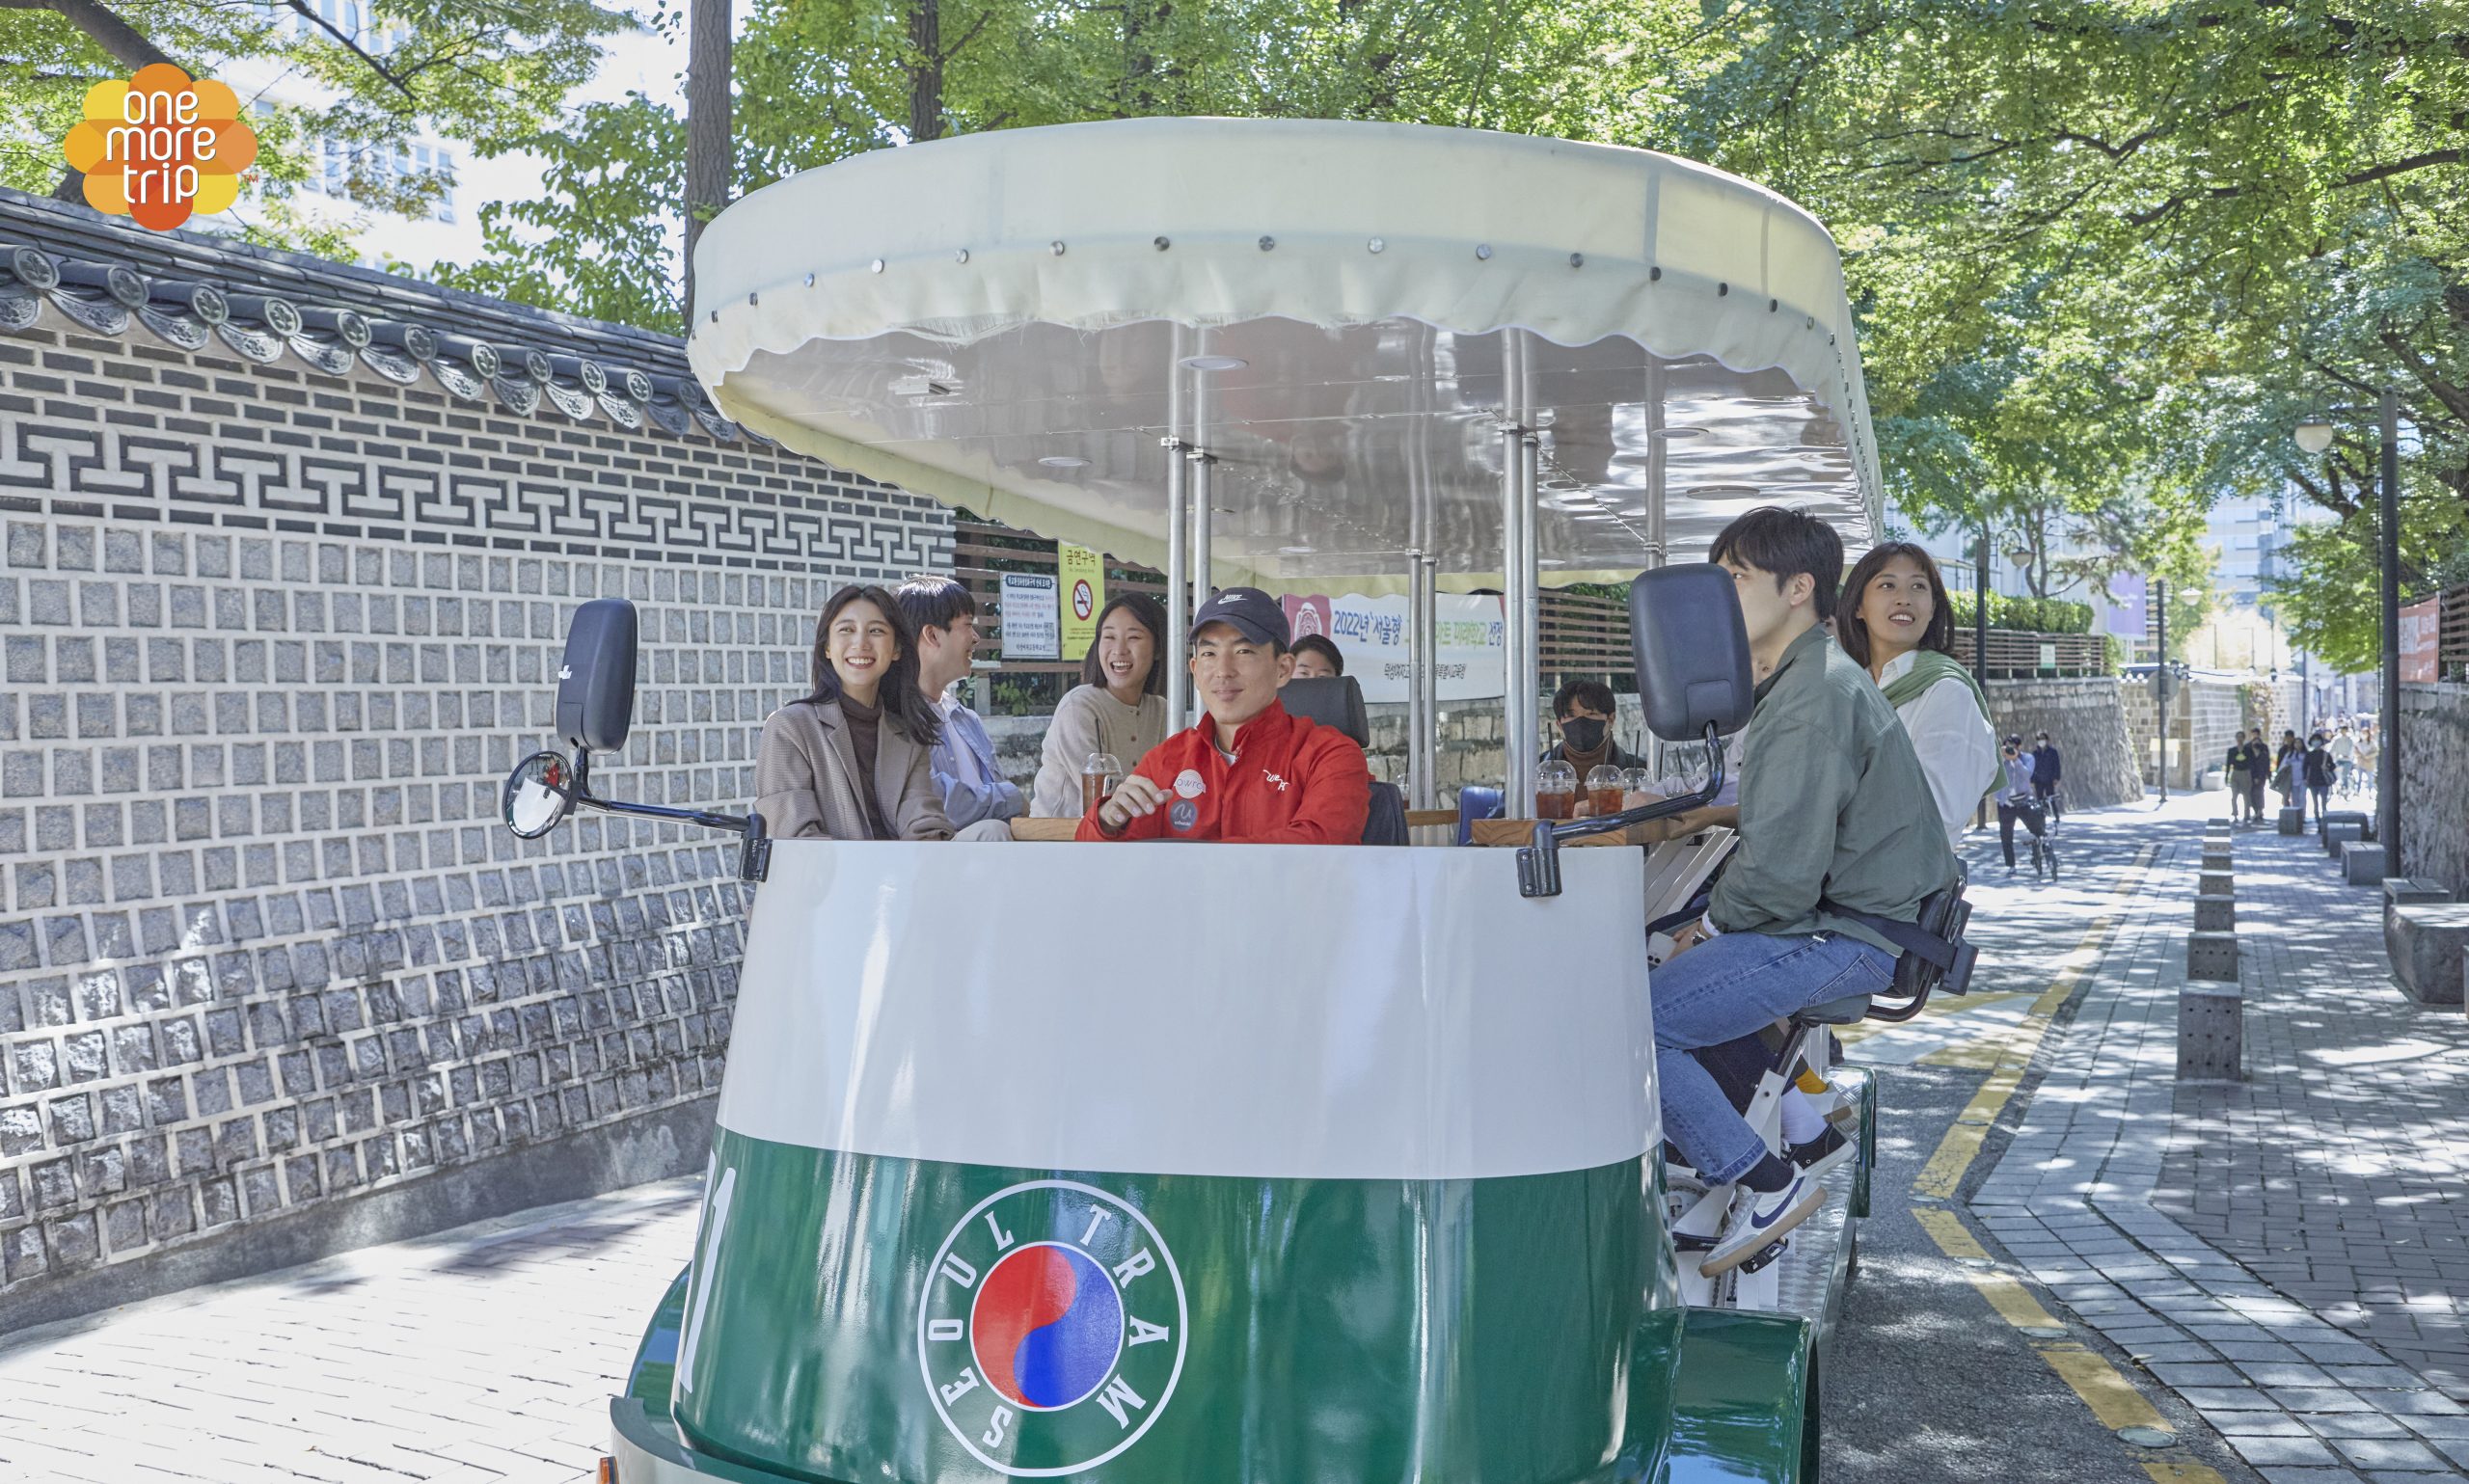 Seoul Tram